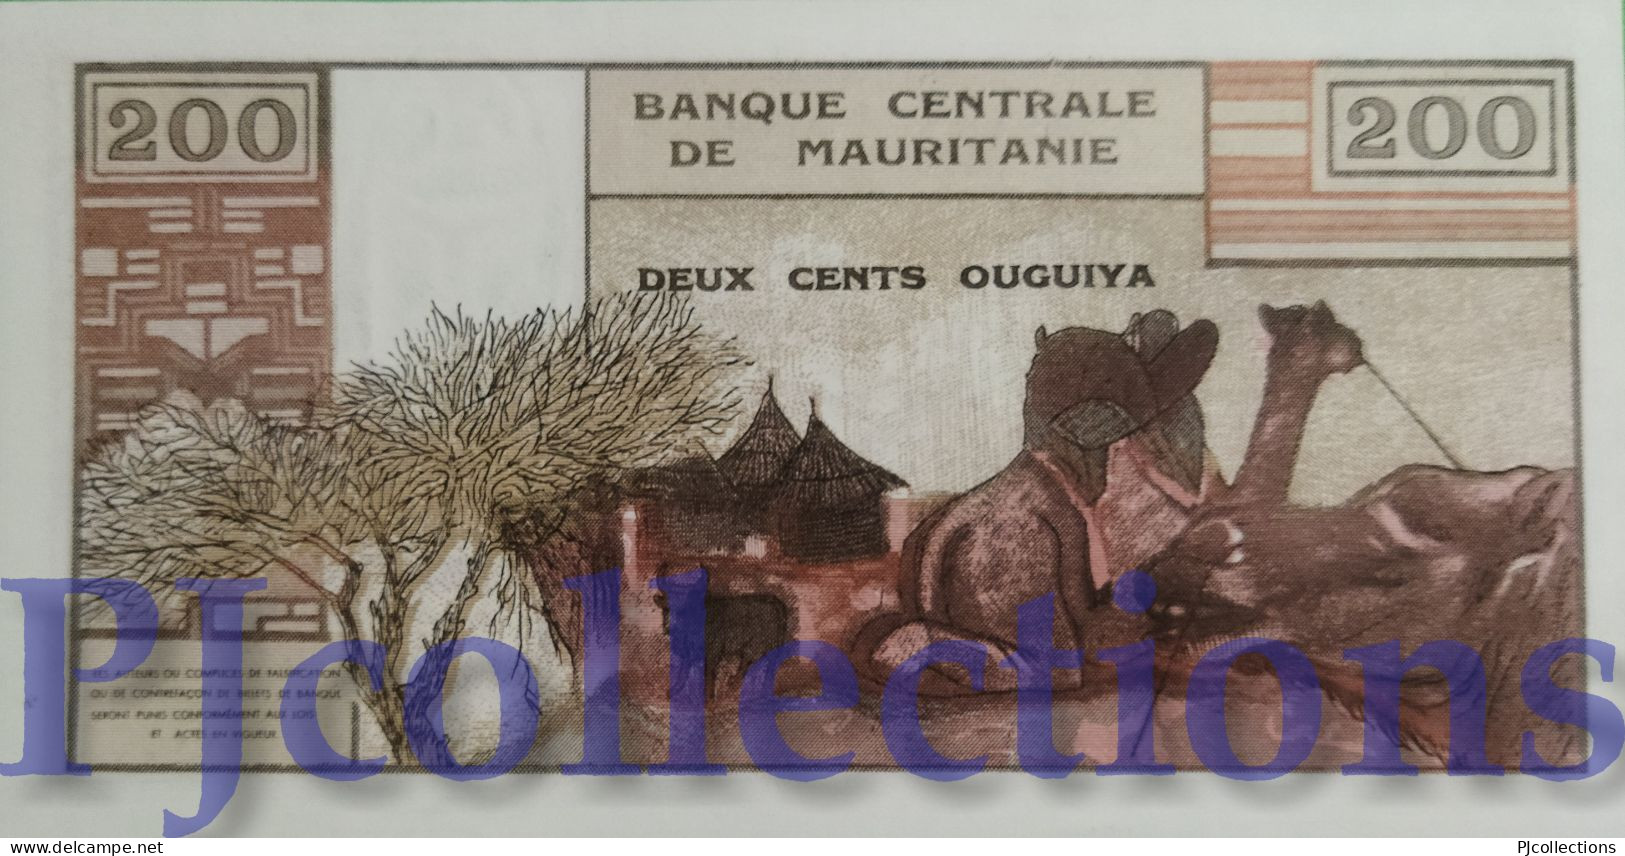 MAURITANIA 200 OUGUIYA 1973 PICK 2a UNC - Mauritanien